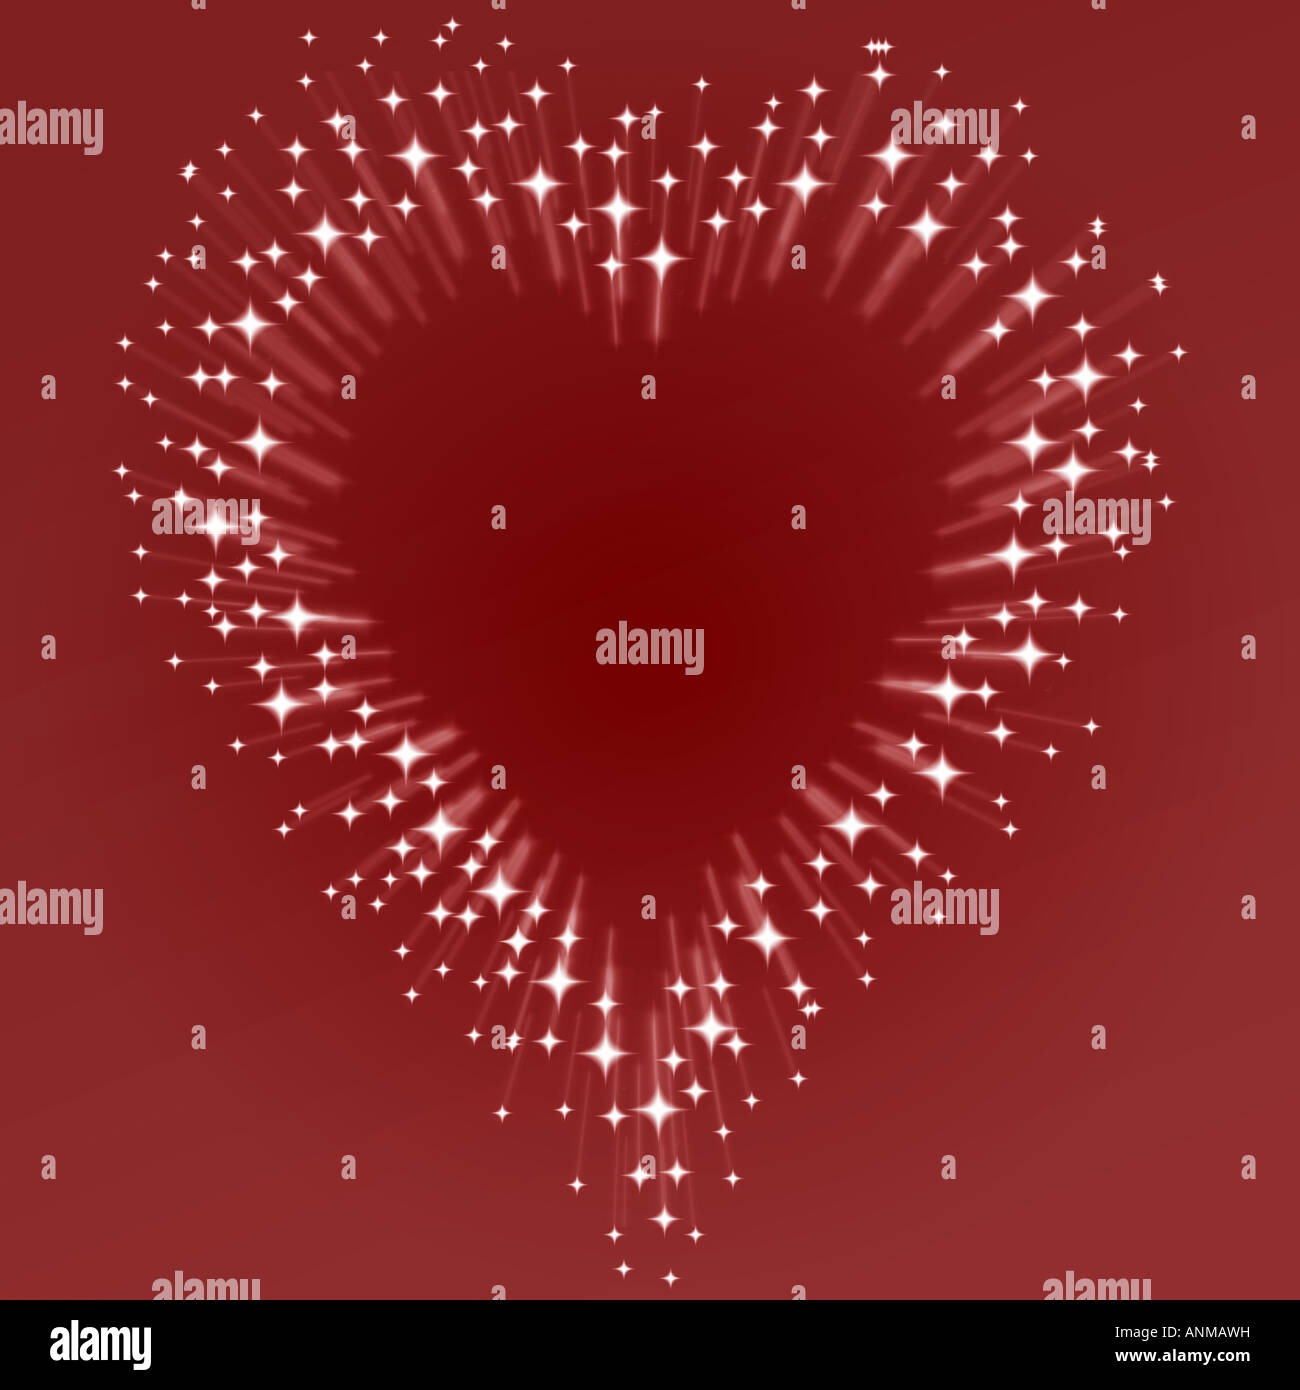 Love Heart sur rouge faite de bursting stars Banque D'Images